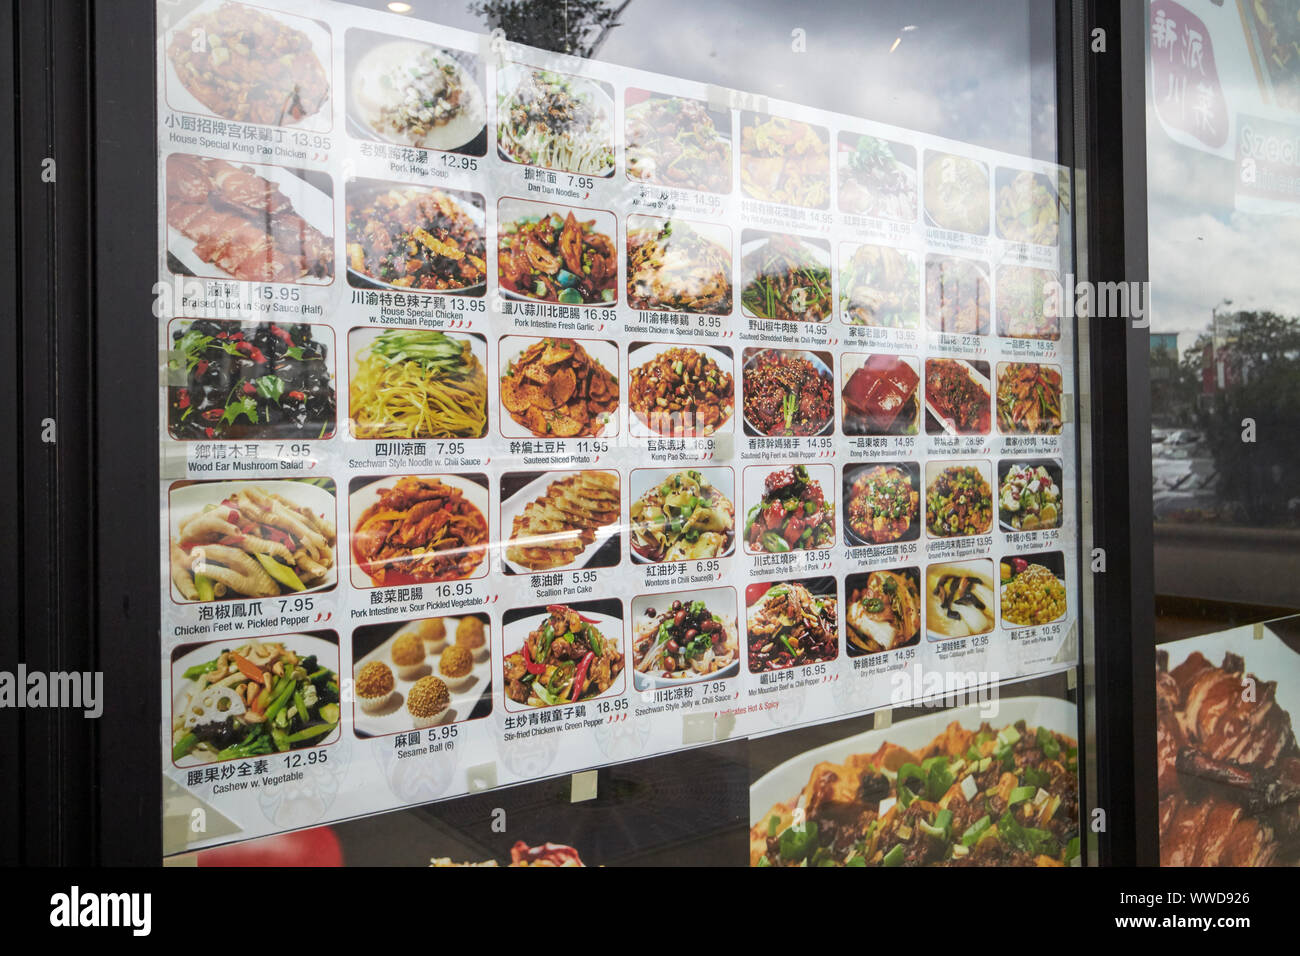 Fotos de alimentos con nombres en chino y en inglés en la ventana de un restaurante de Chinatown de Chicago, Illinois, EE.UU. Foto de stock